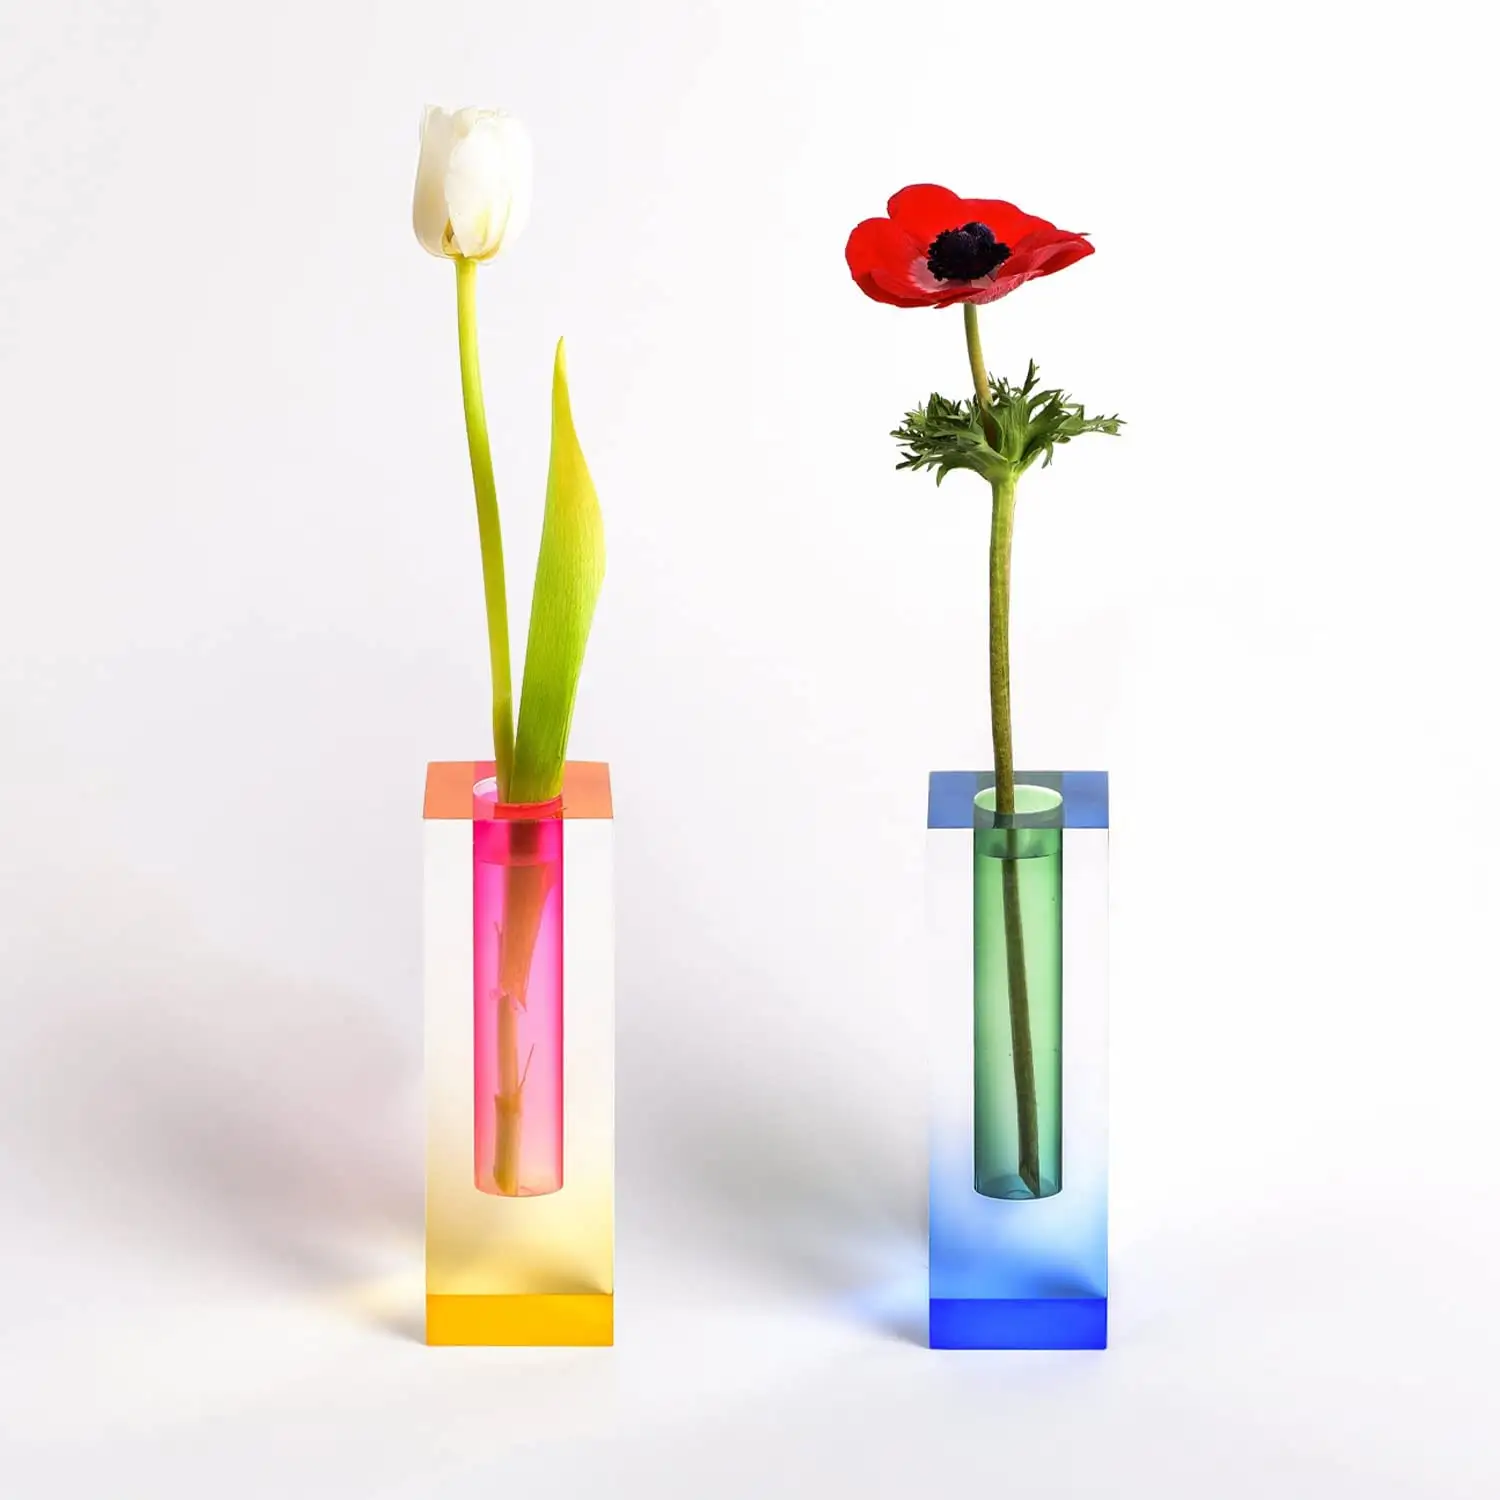 Vaso de flores acrílico, vaso para sala de estar, colorido, de plástico, iridescente